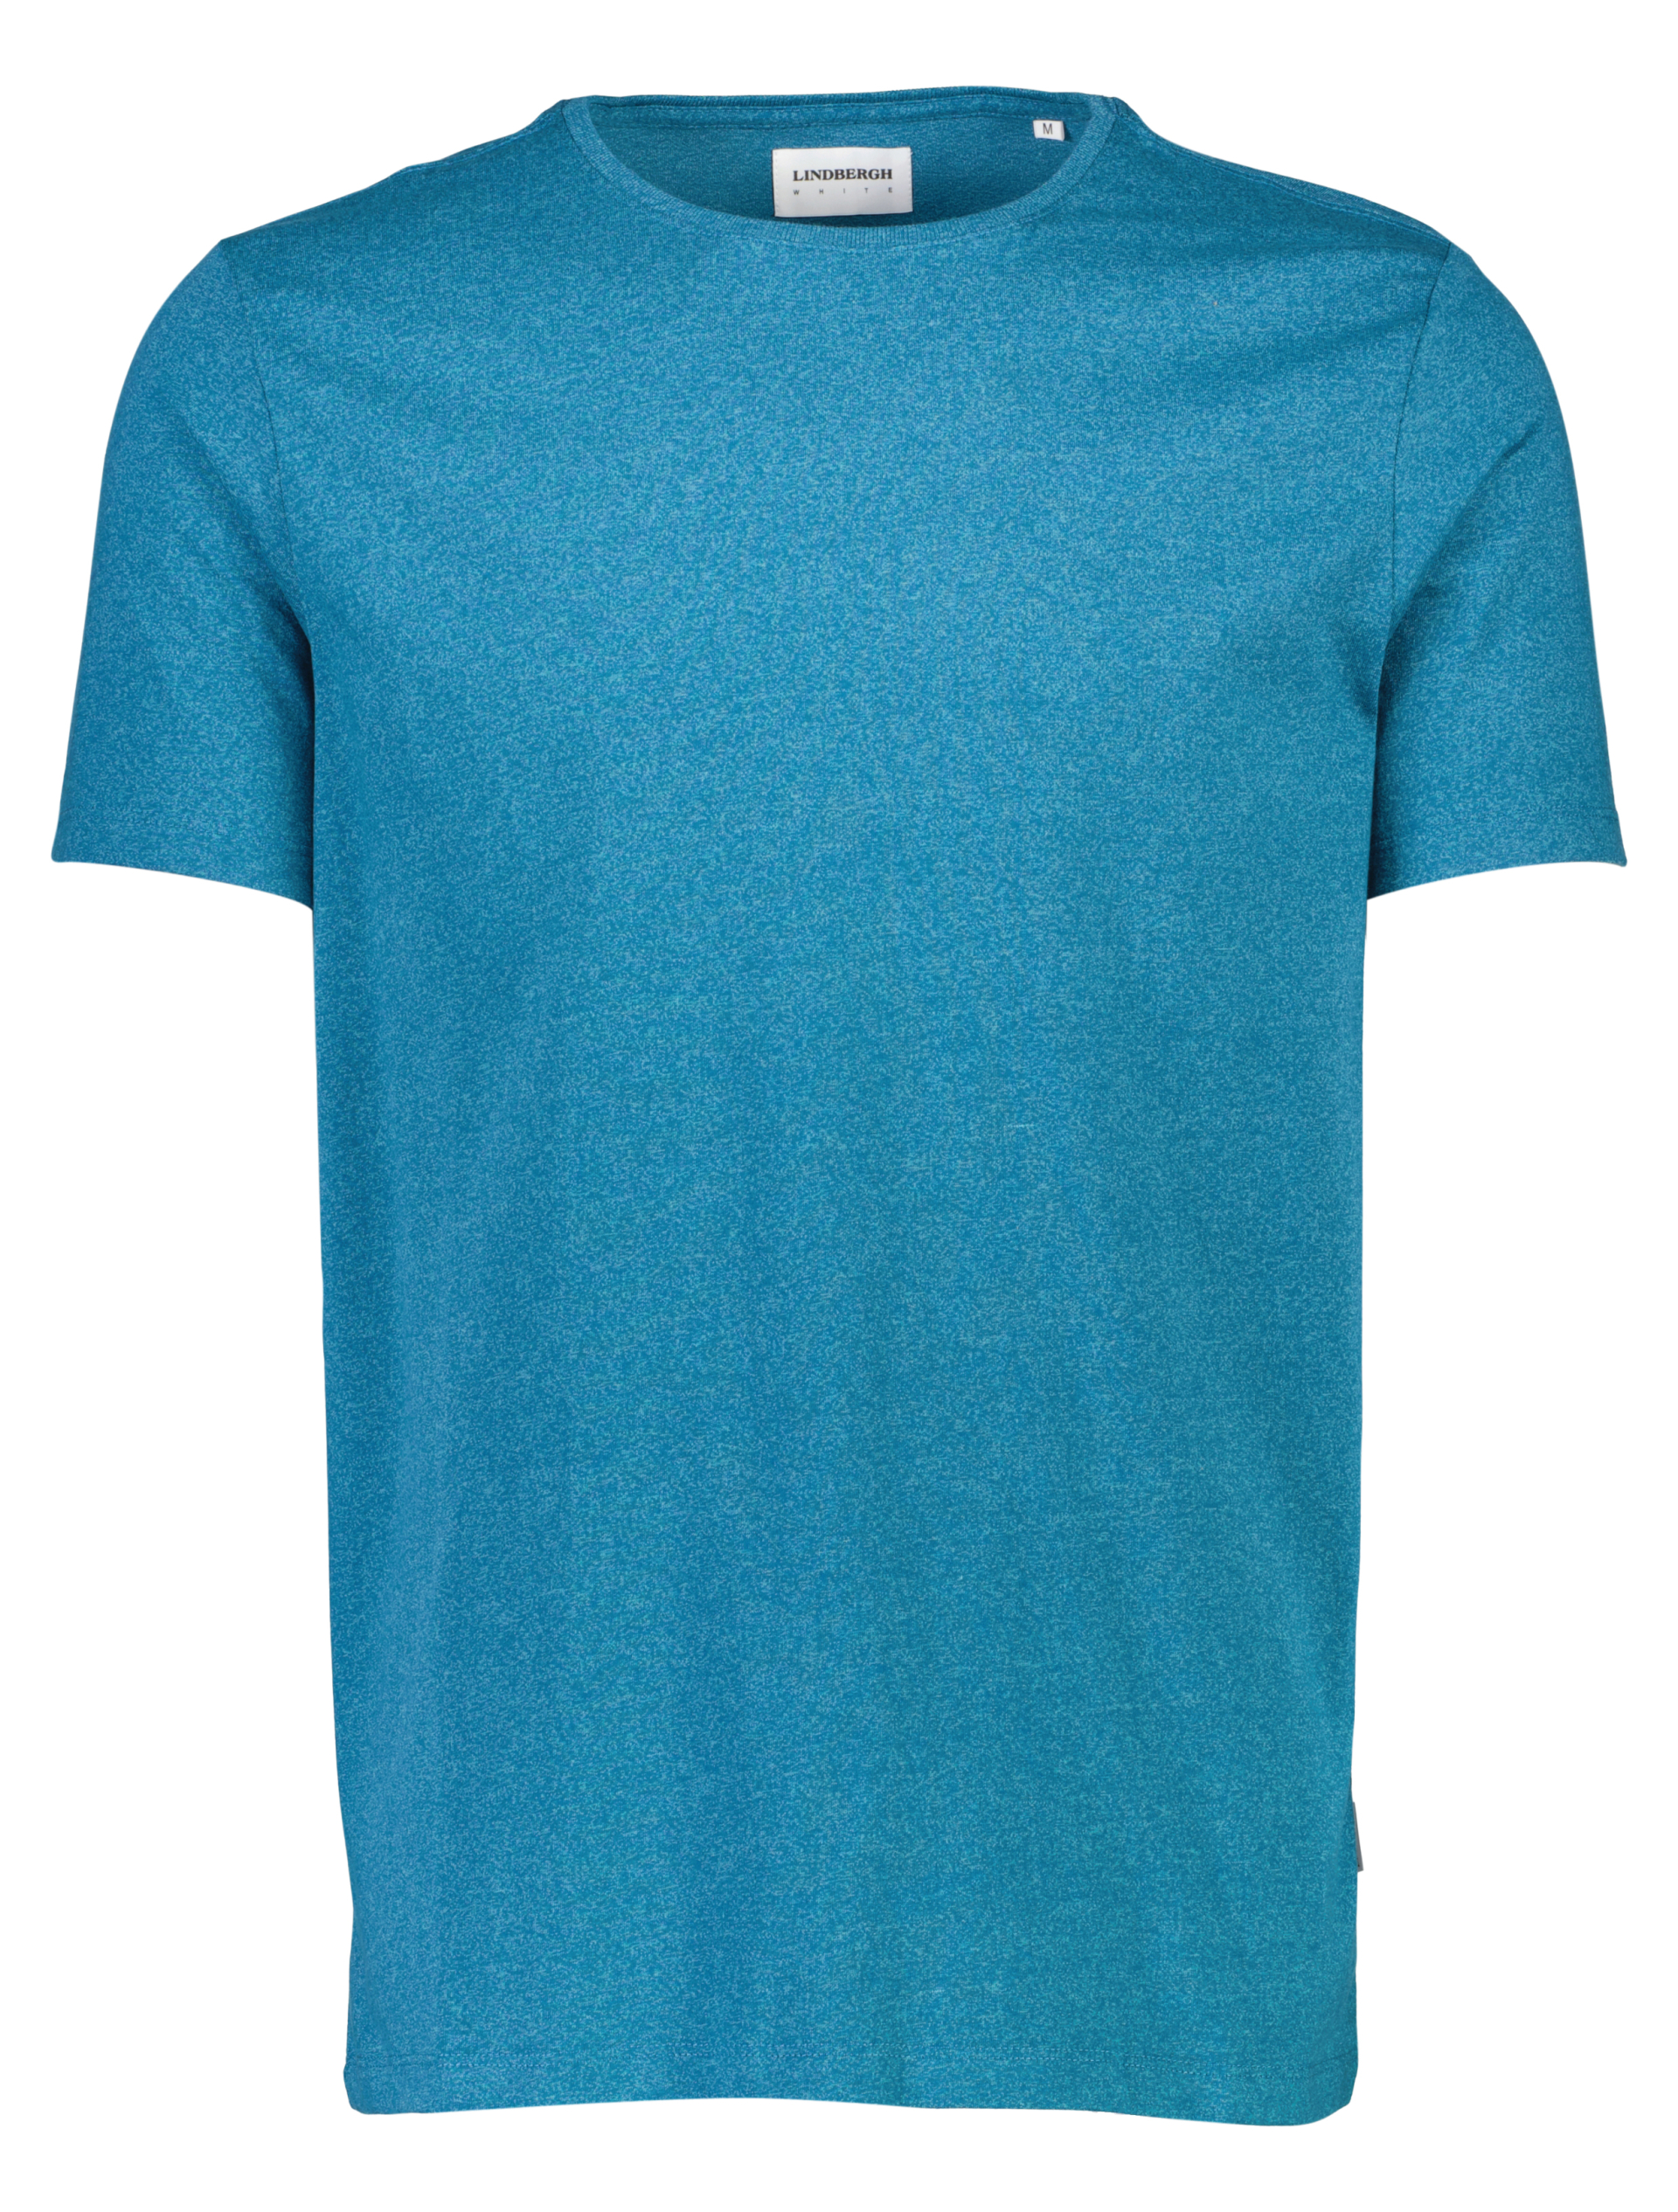 Lindbergh T-shirt blå / aqua mix 323